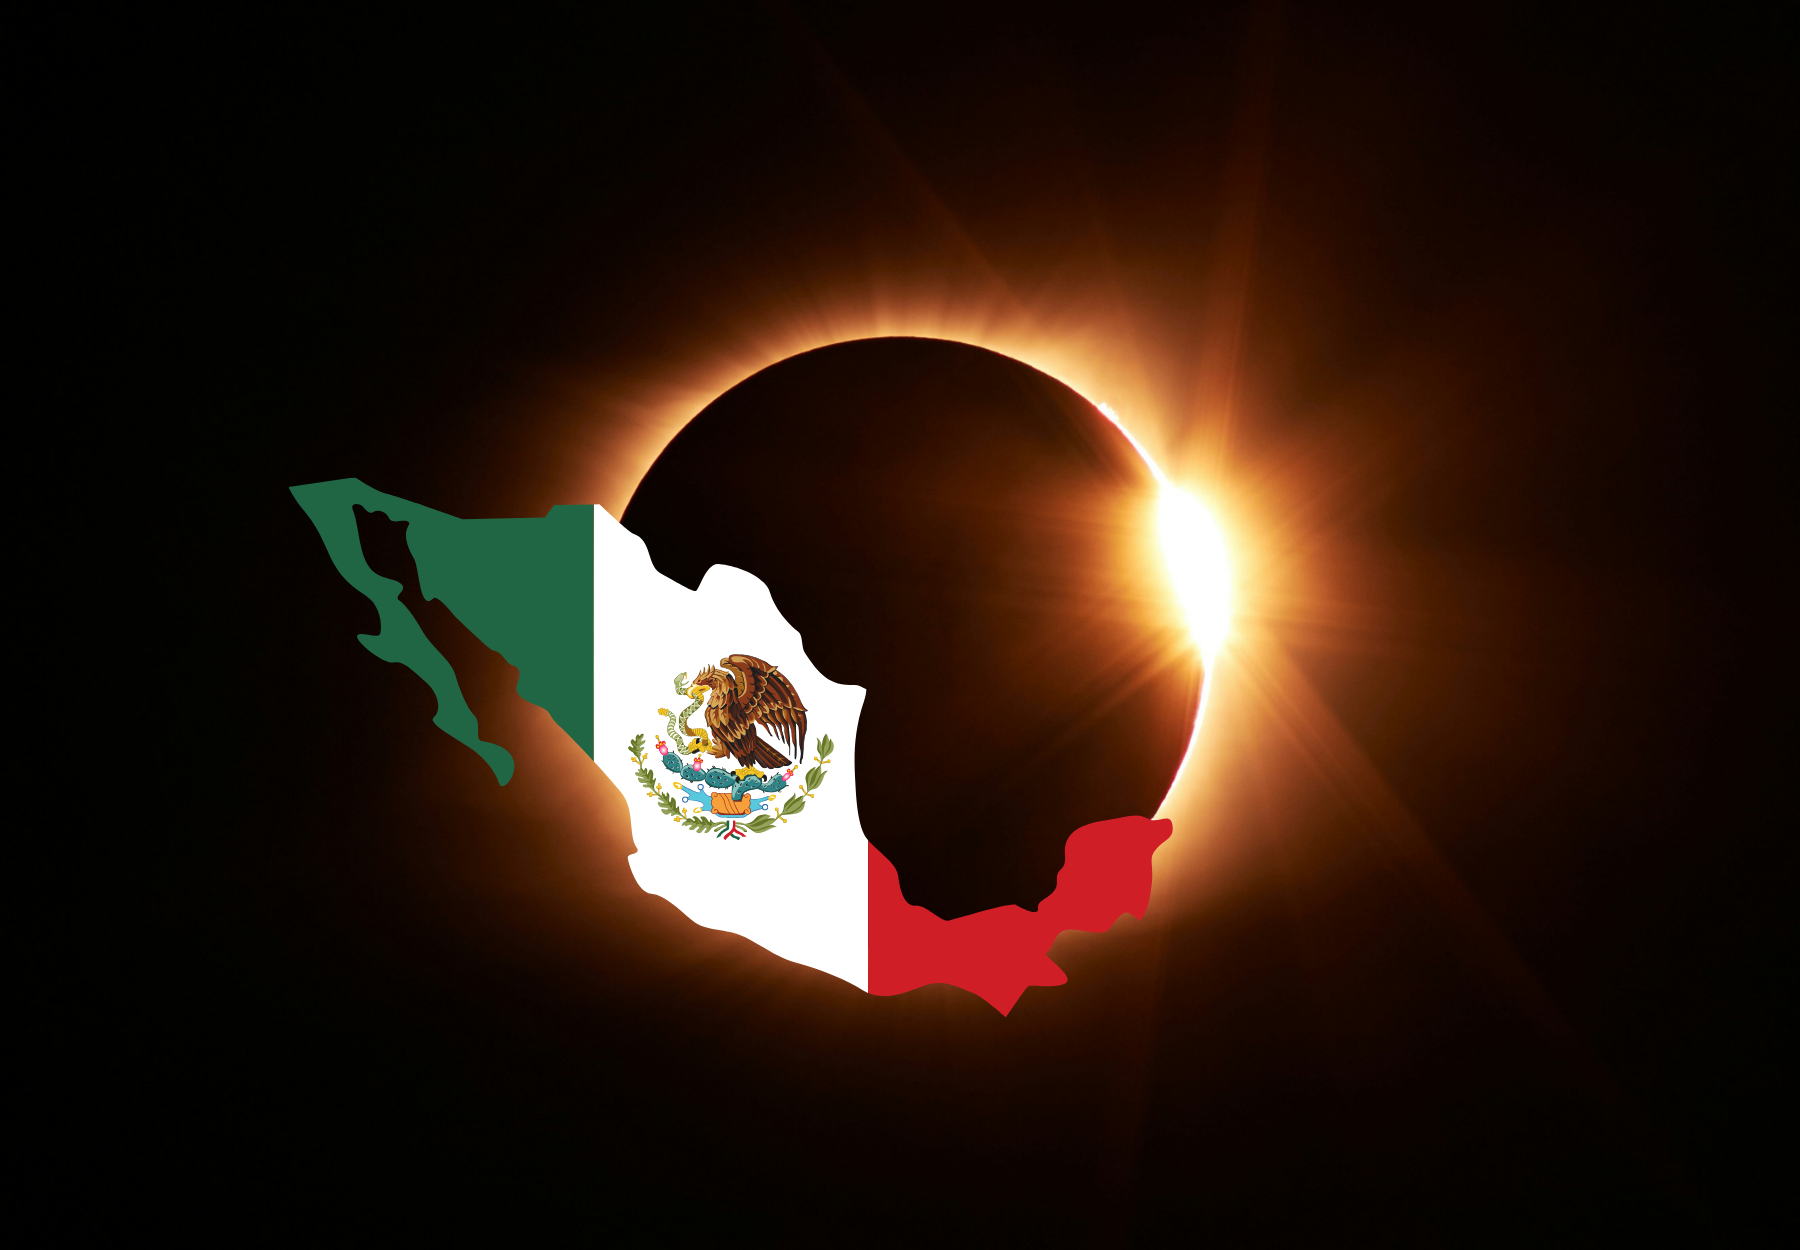 ¿Dónde ver el eclipse total solar en México de acuerdo a la NASA? Además de Coahuila y Durango, estos estados también se oscurecerán por completo en abril . Noticias en tiempo real